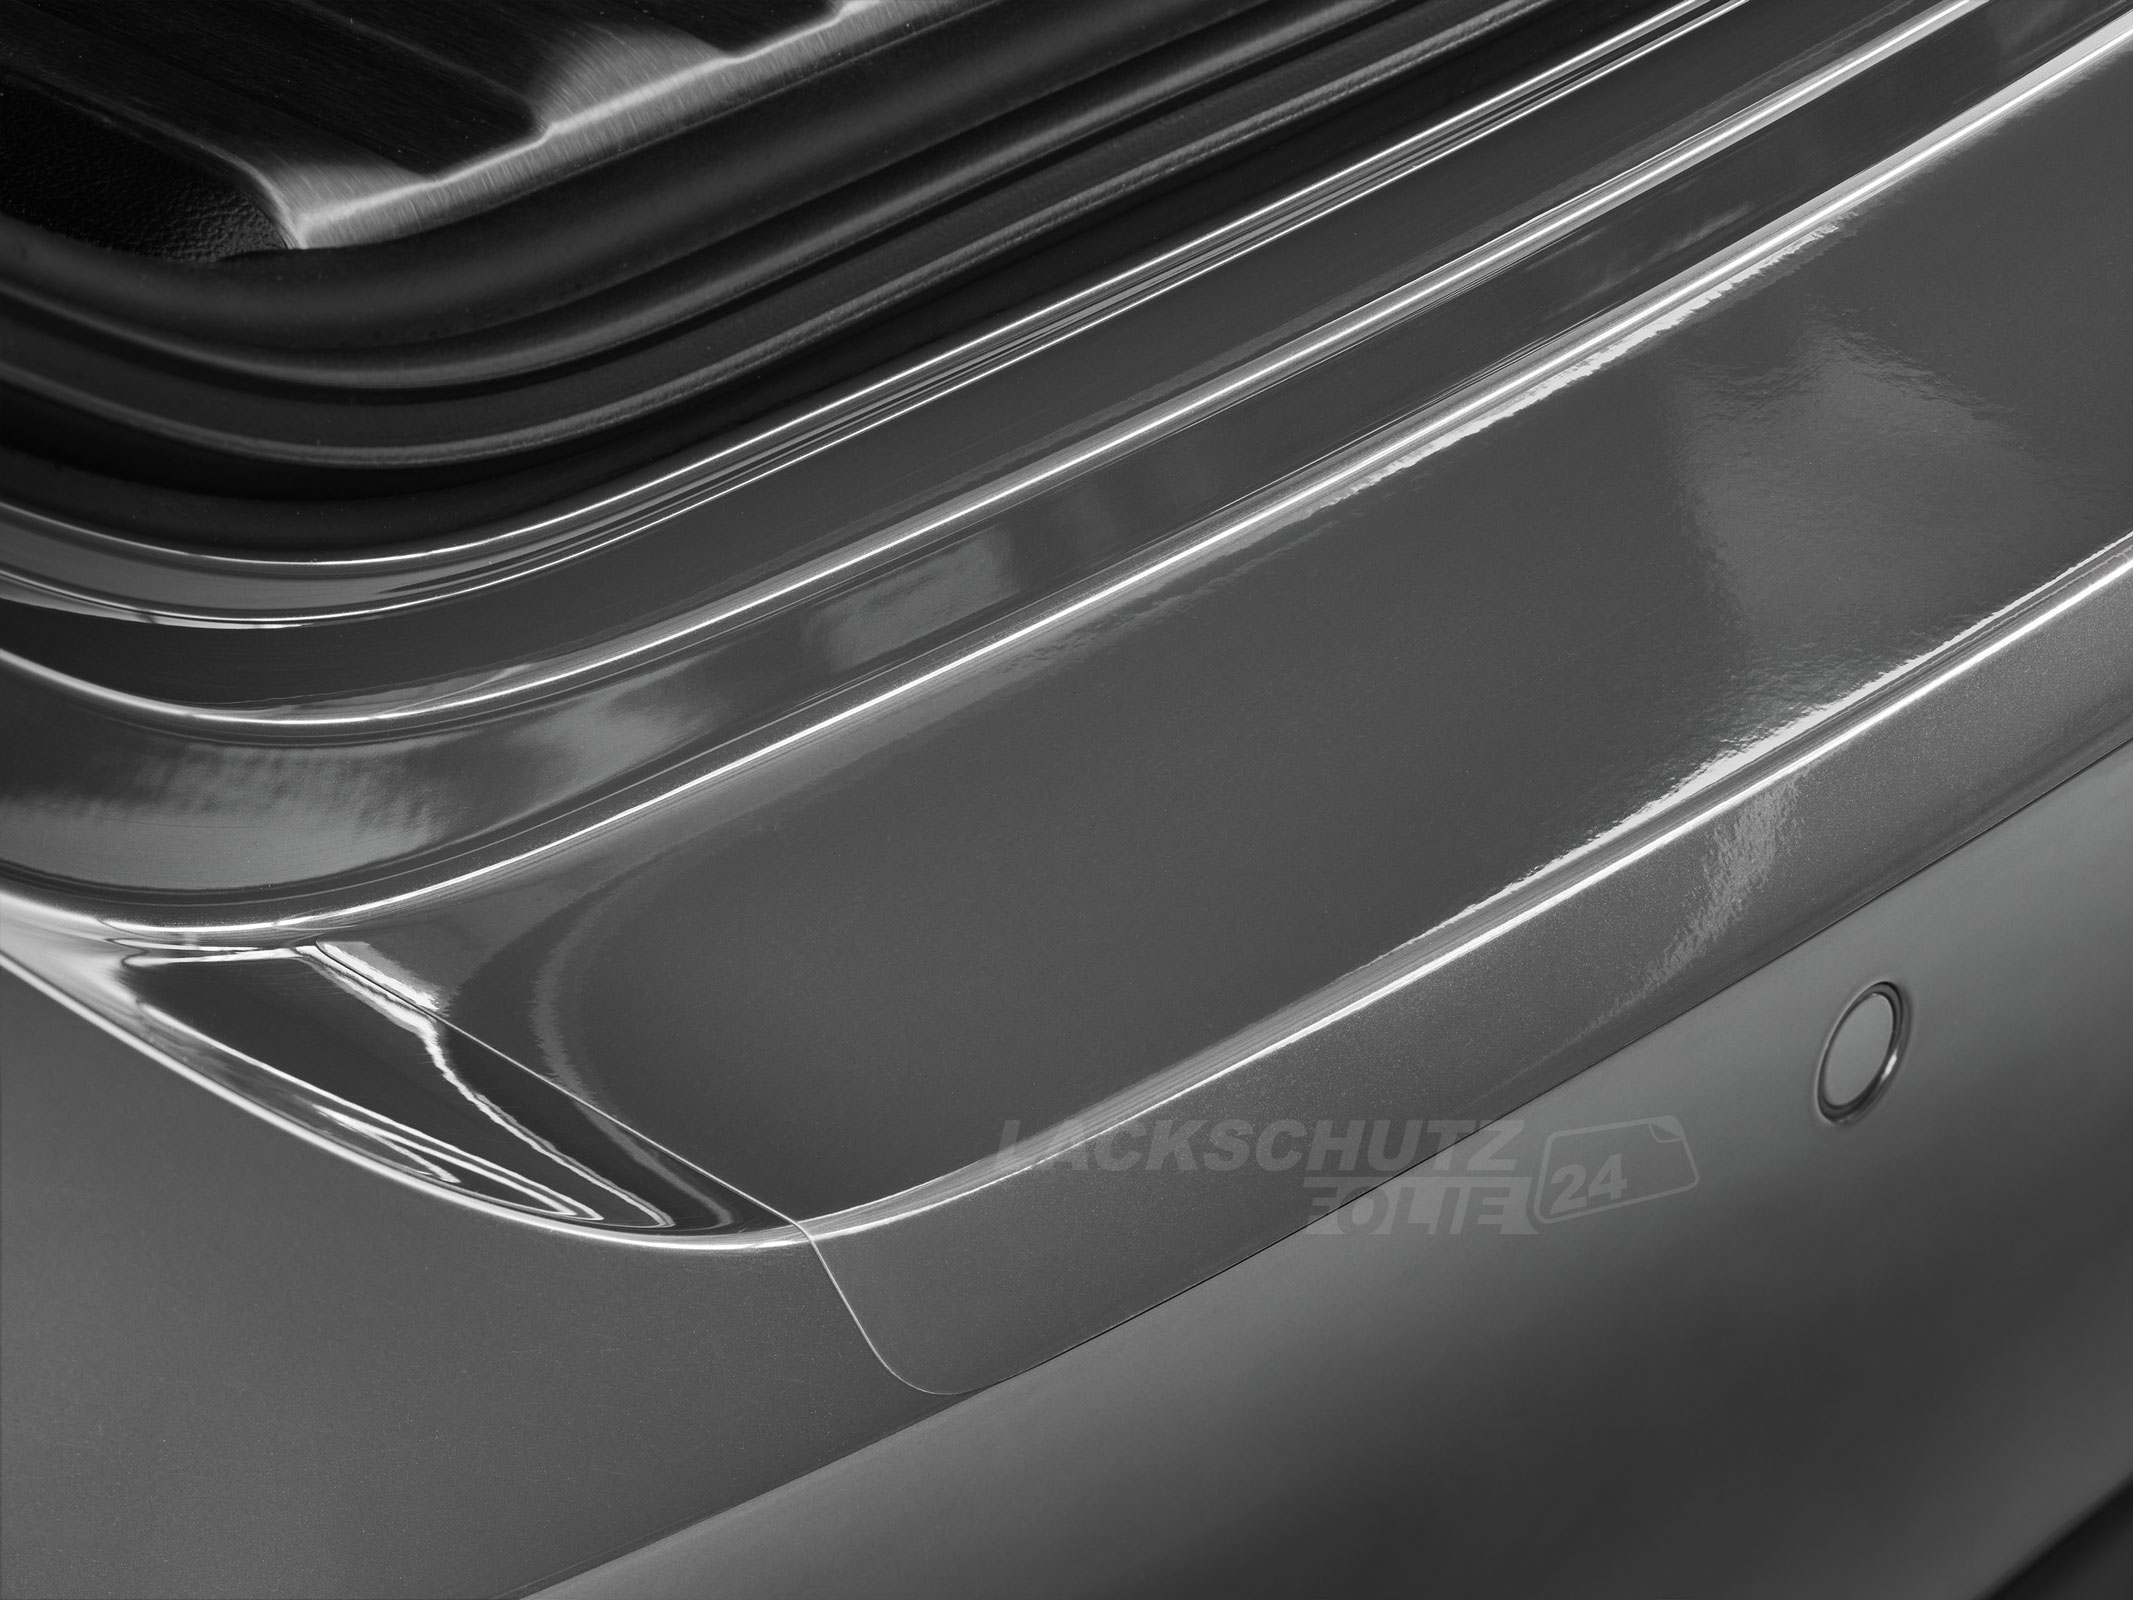 Ladekantenschutzfolie - Transparent Glatt Hochglänzend 240 µm stark für VW / Volkswagen Passat Limousine B7, Typ 3C, BJ 10/2010-11/2014